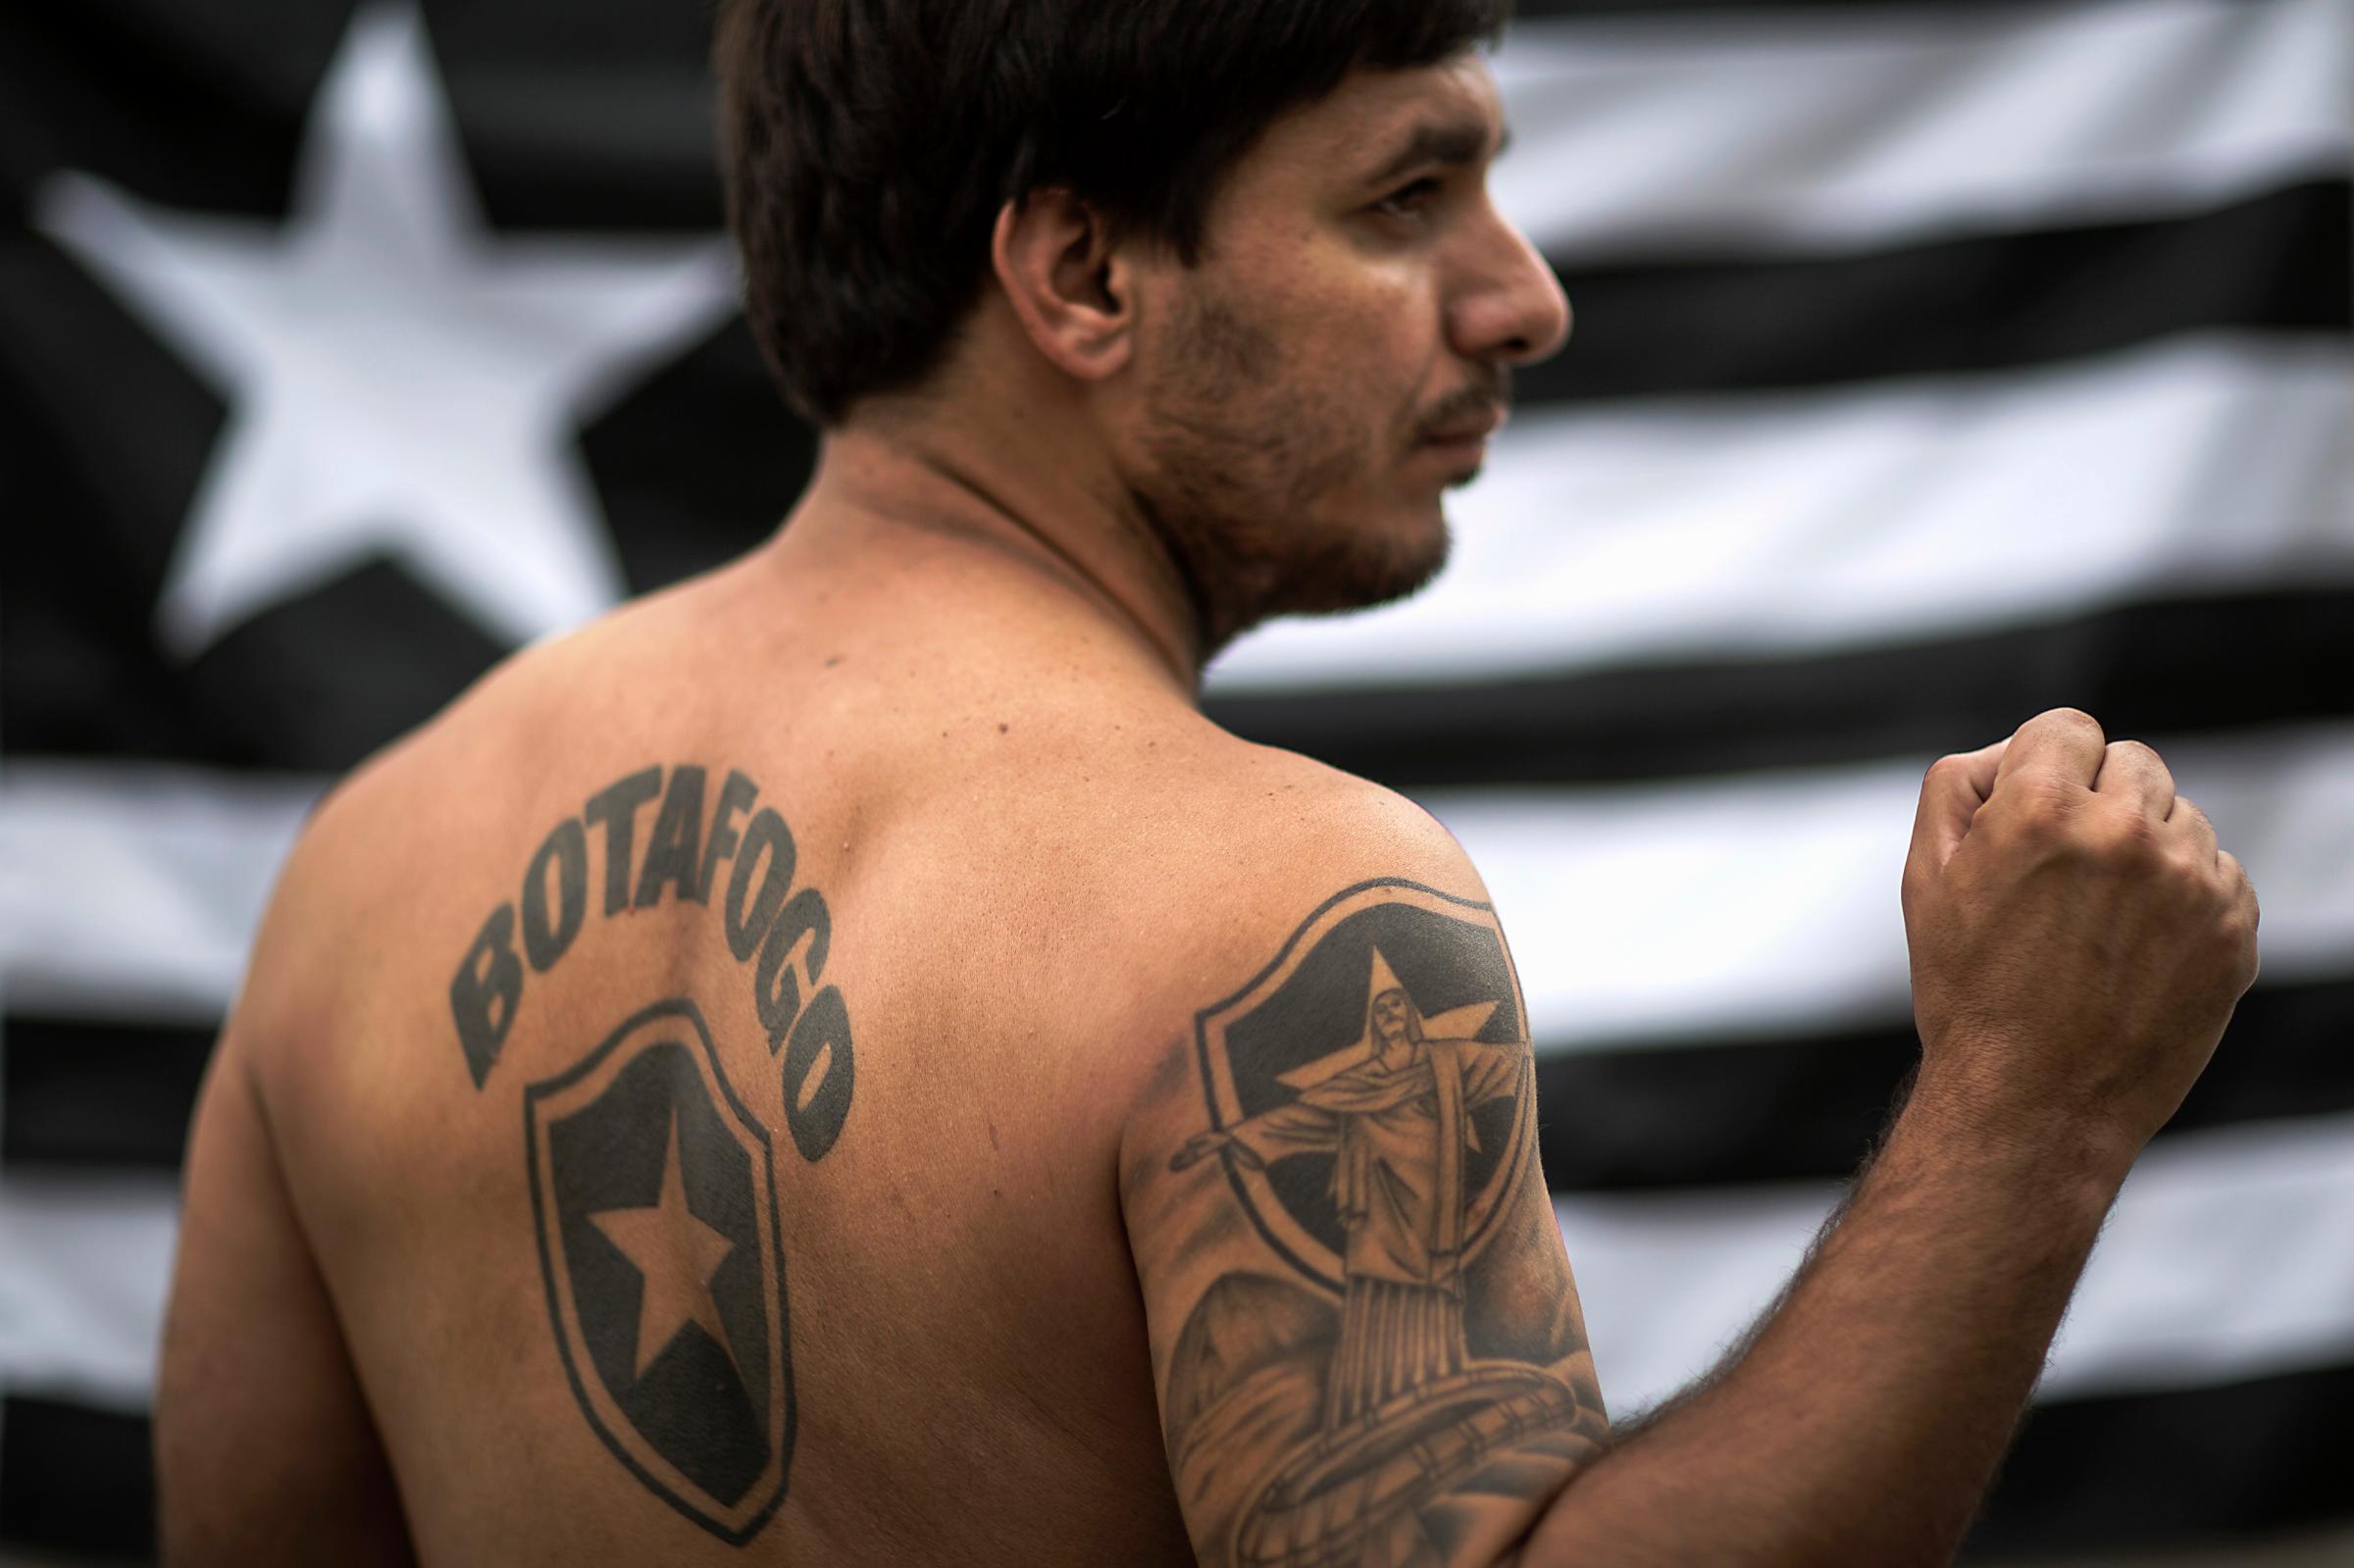 world-cup-tattoo-soccer-fan